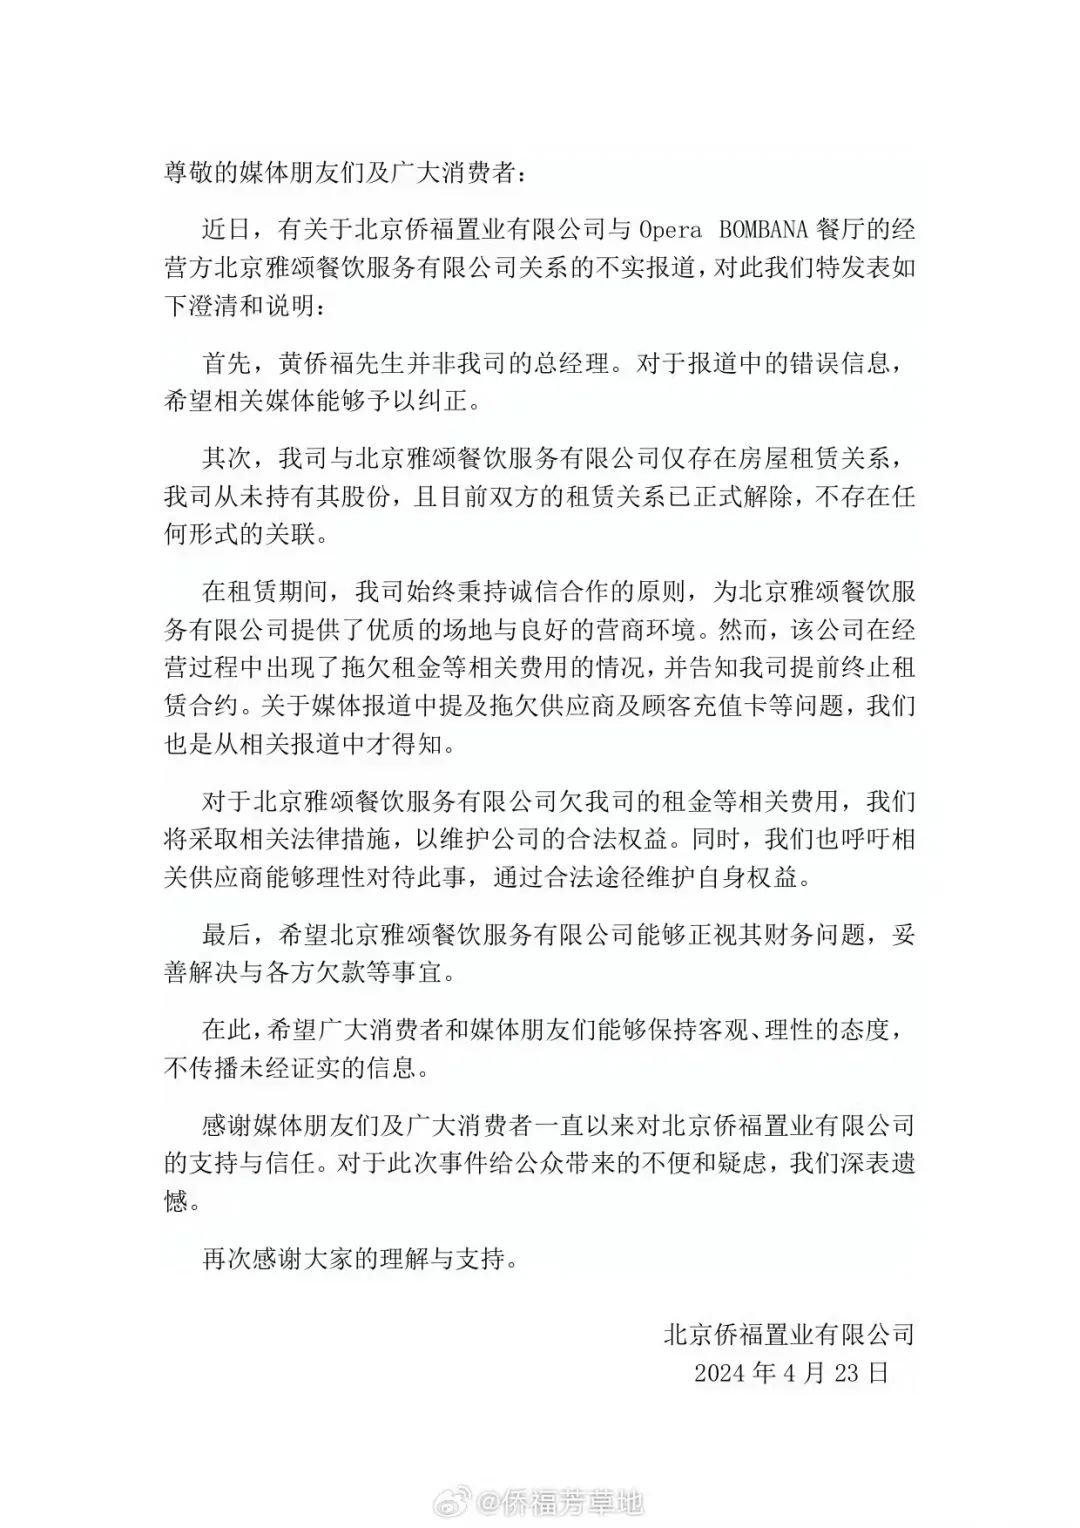 北京知名餐厅突然闭店，供应商称欠款约400万元